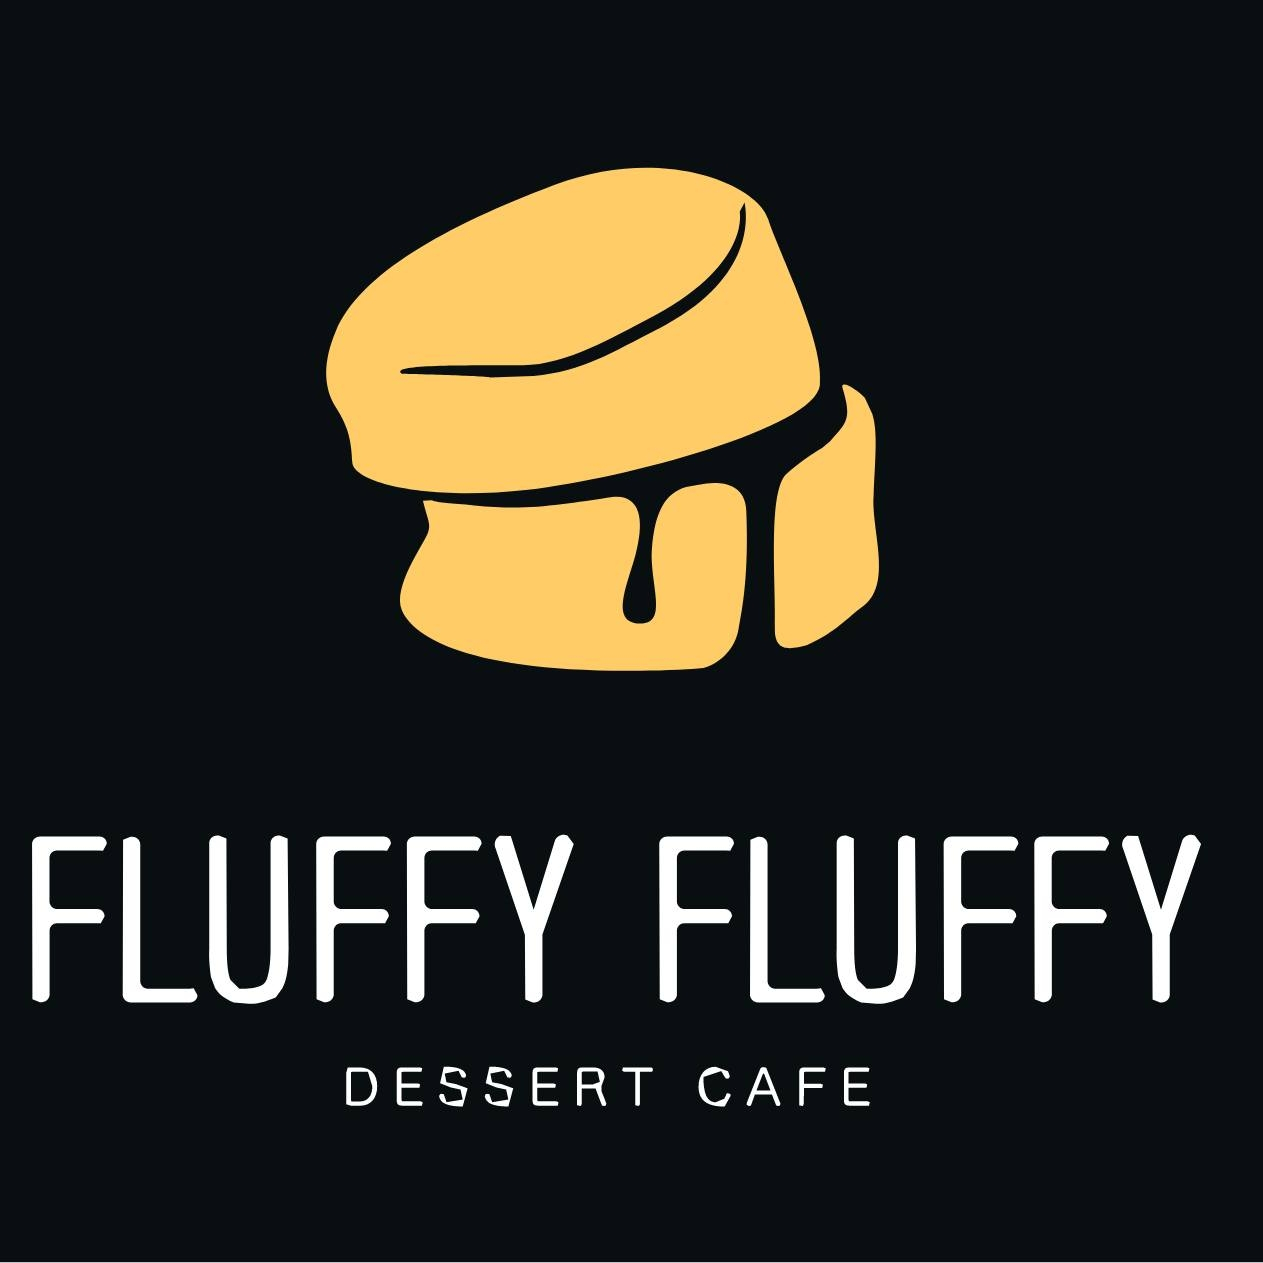 fluffyfluffy